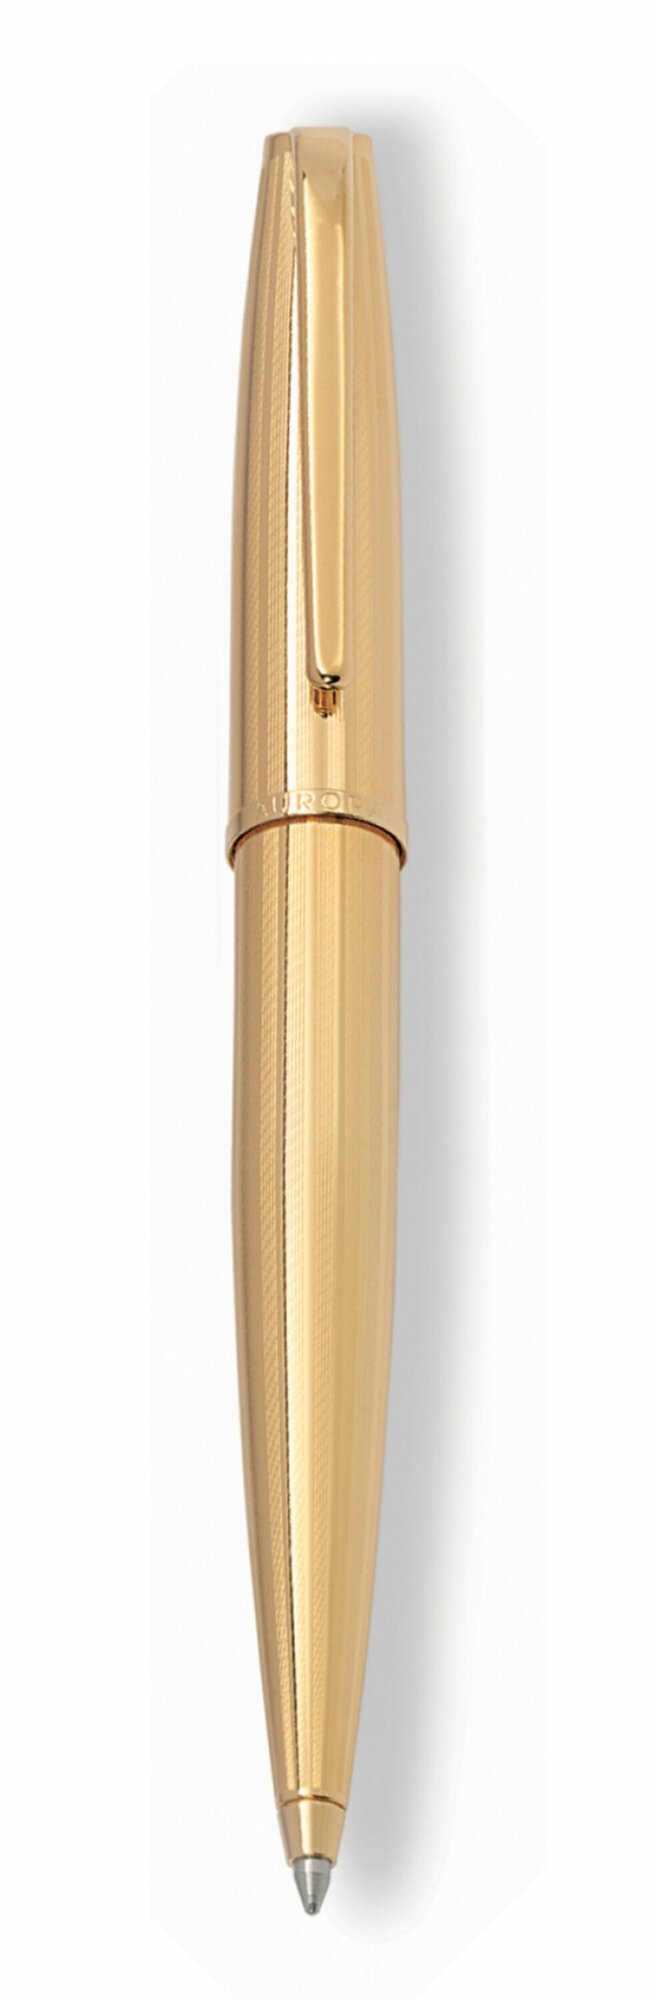 Шариковая ручка Aurora Style gold plated barrel and cap, в подарочной коробке